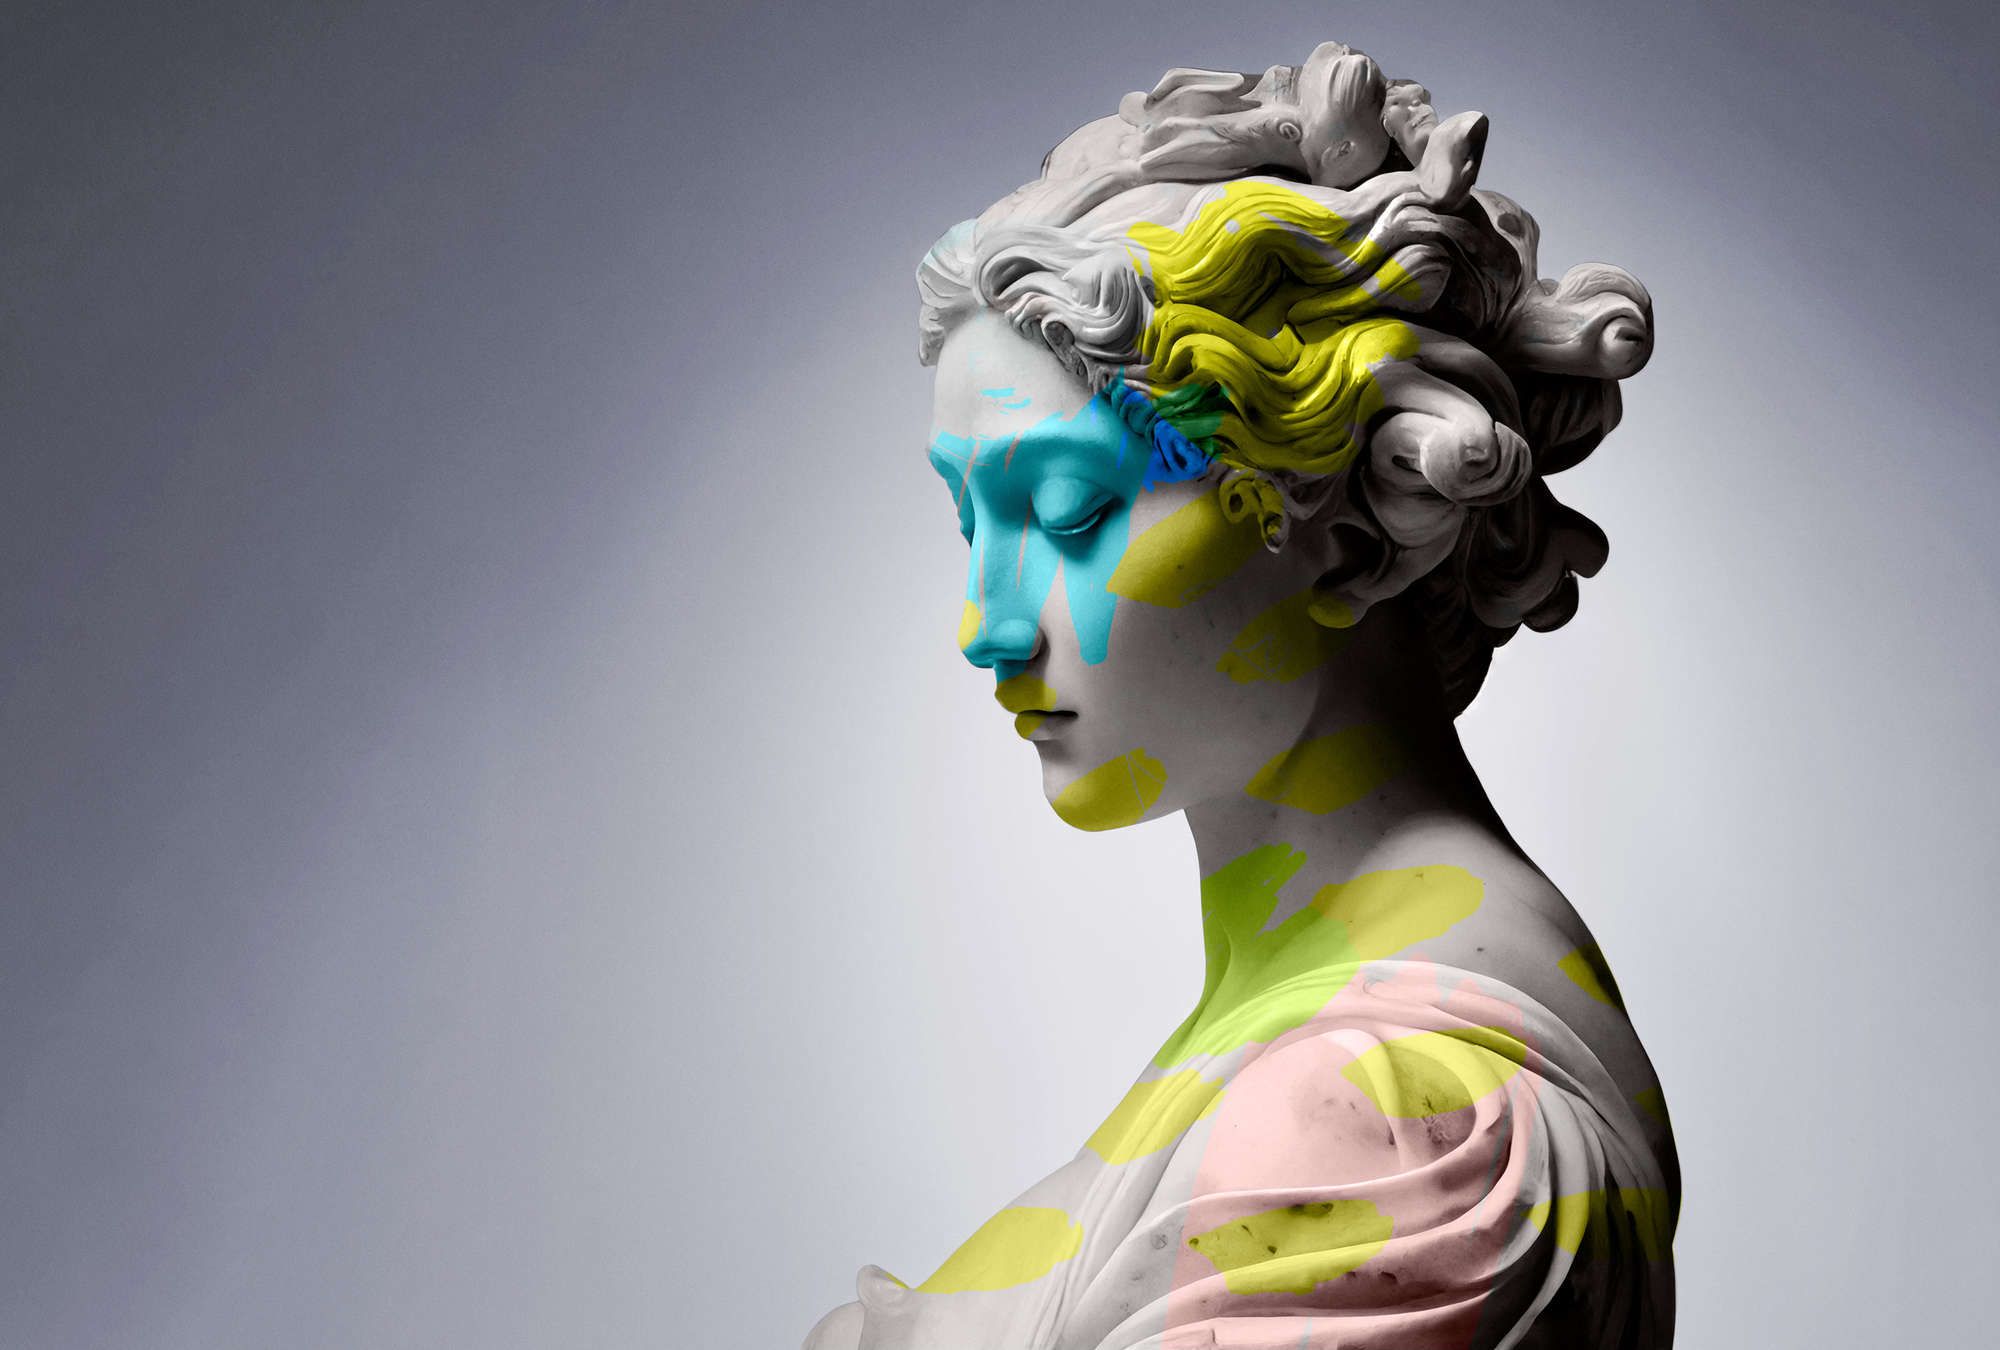             Digital behang »clio« - vrouwelijk beeld met kleurrijke accenten - Licht getextureerde vliesstof
        